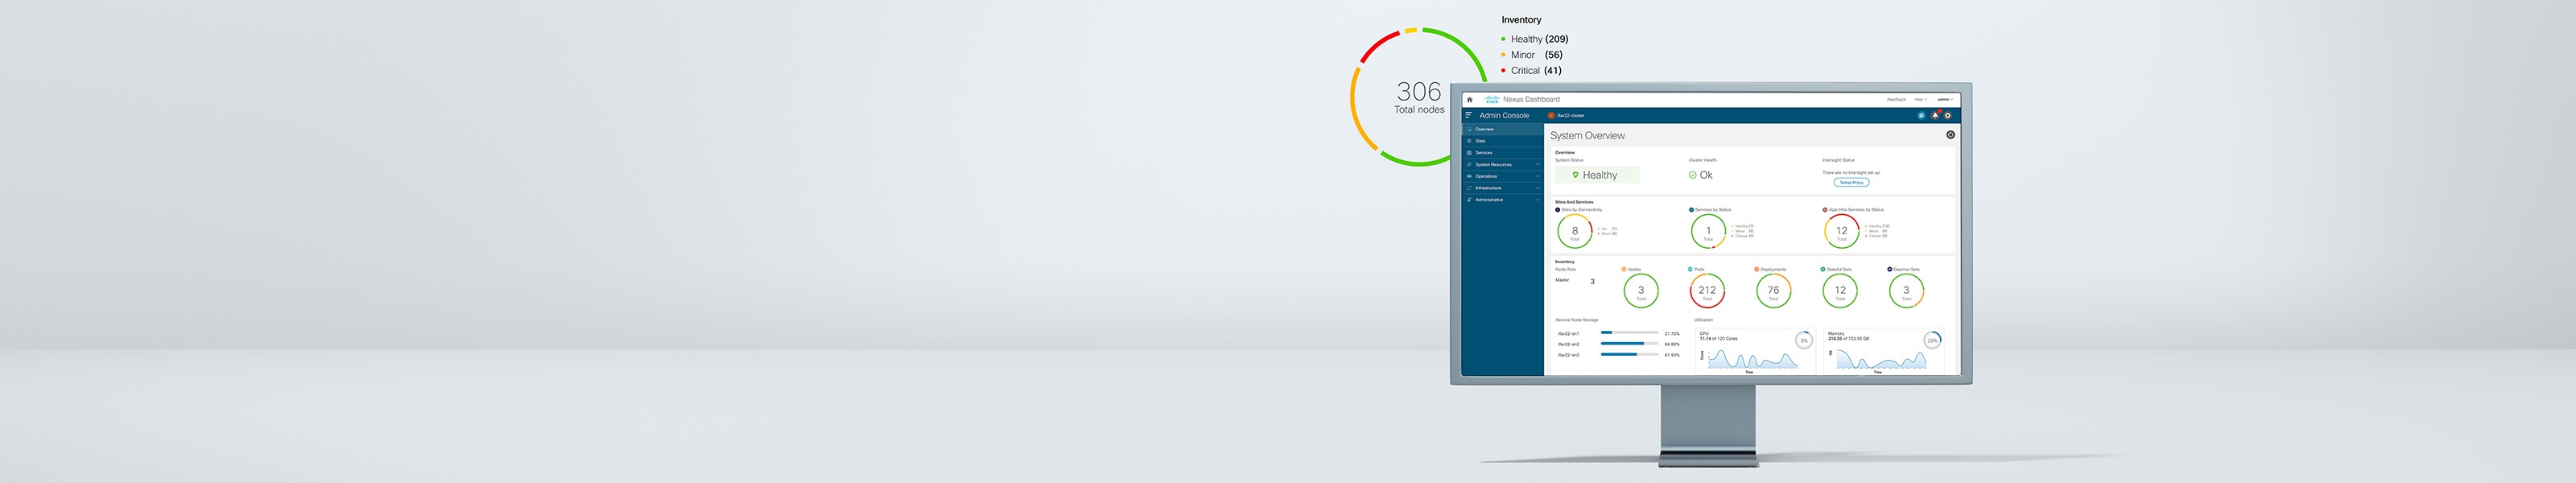 Cisco Nexus Dashboard mit Systemübersicht